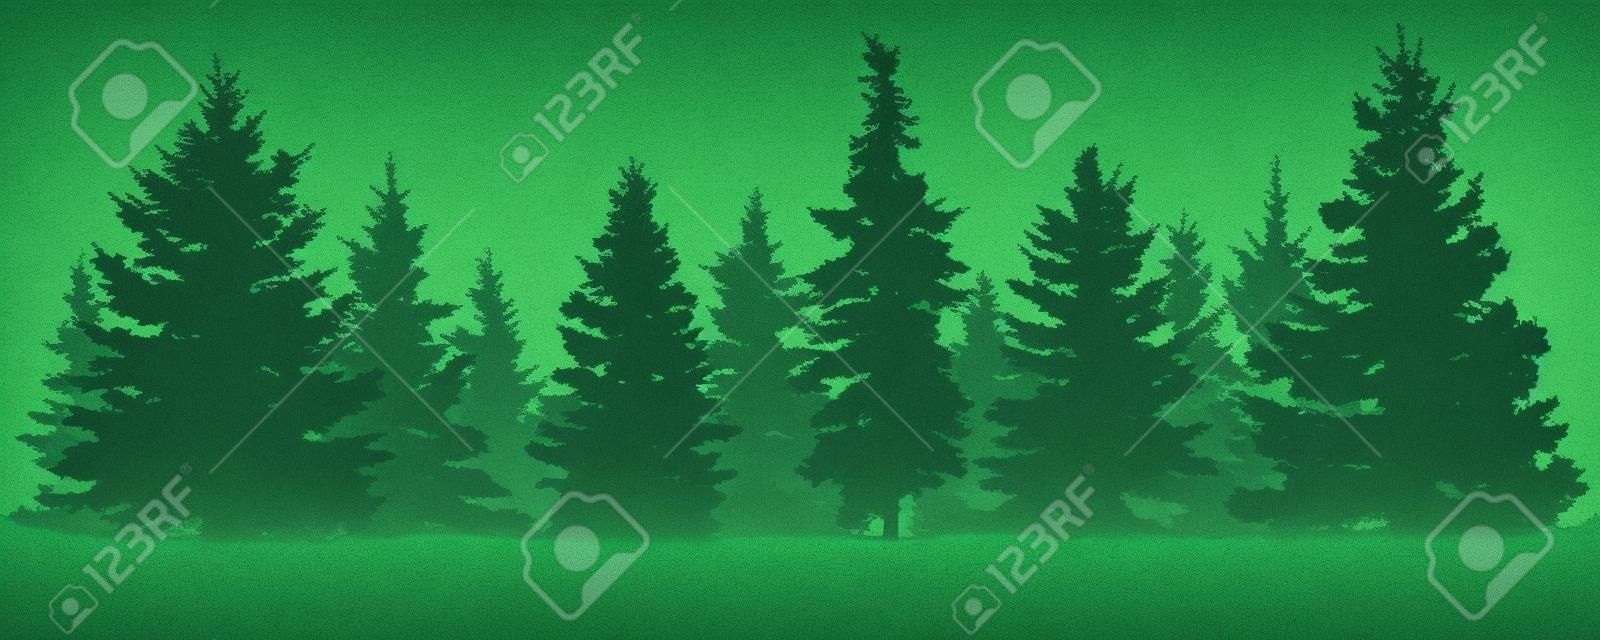 Waldtannenbaumschattenbild. Nadelgrüne Fichte. Vektor auf weißem Hintergrund